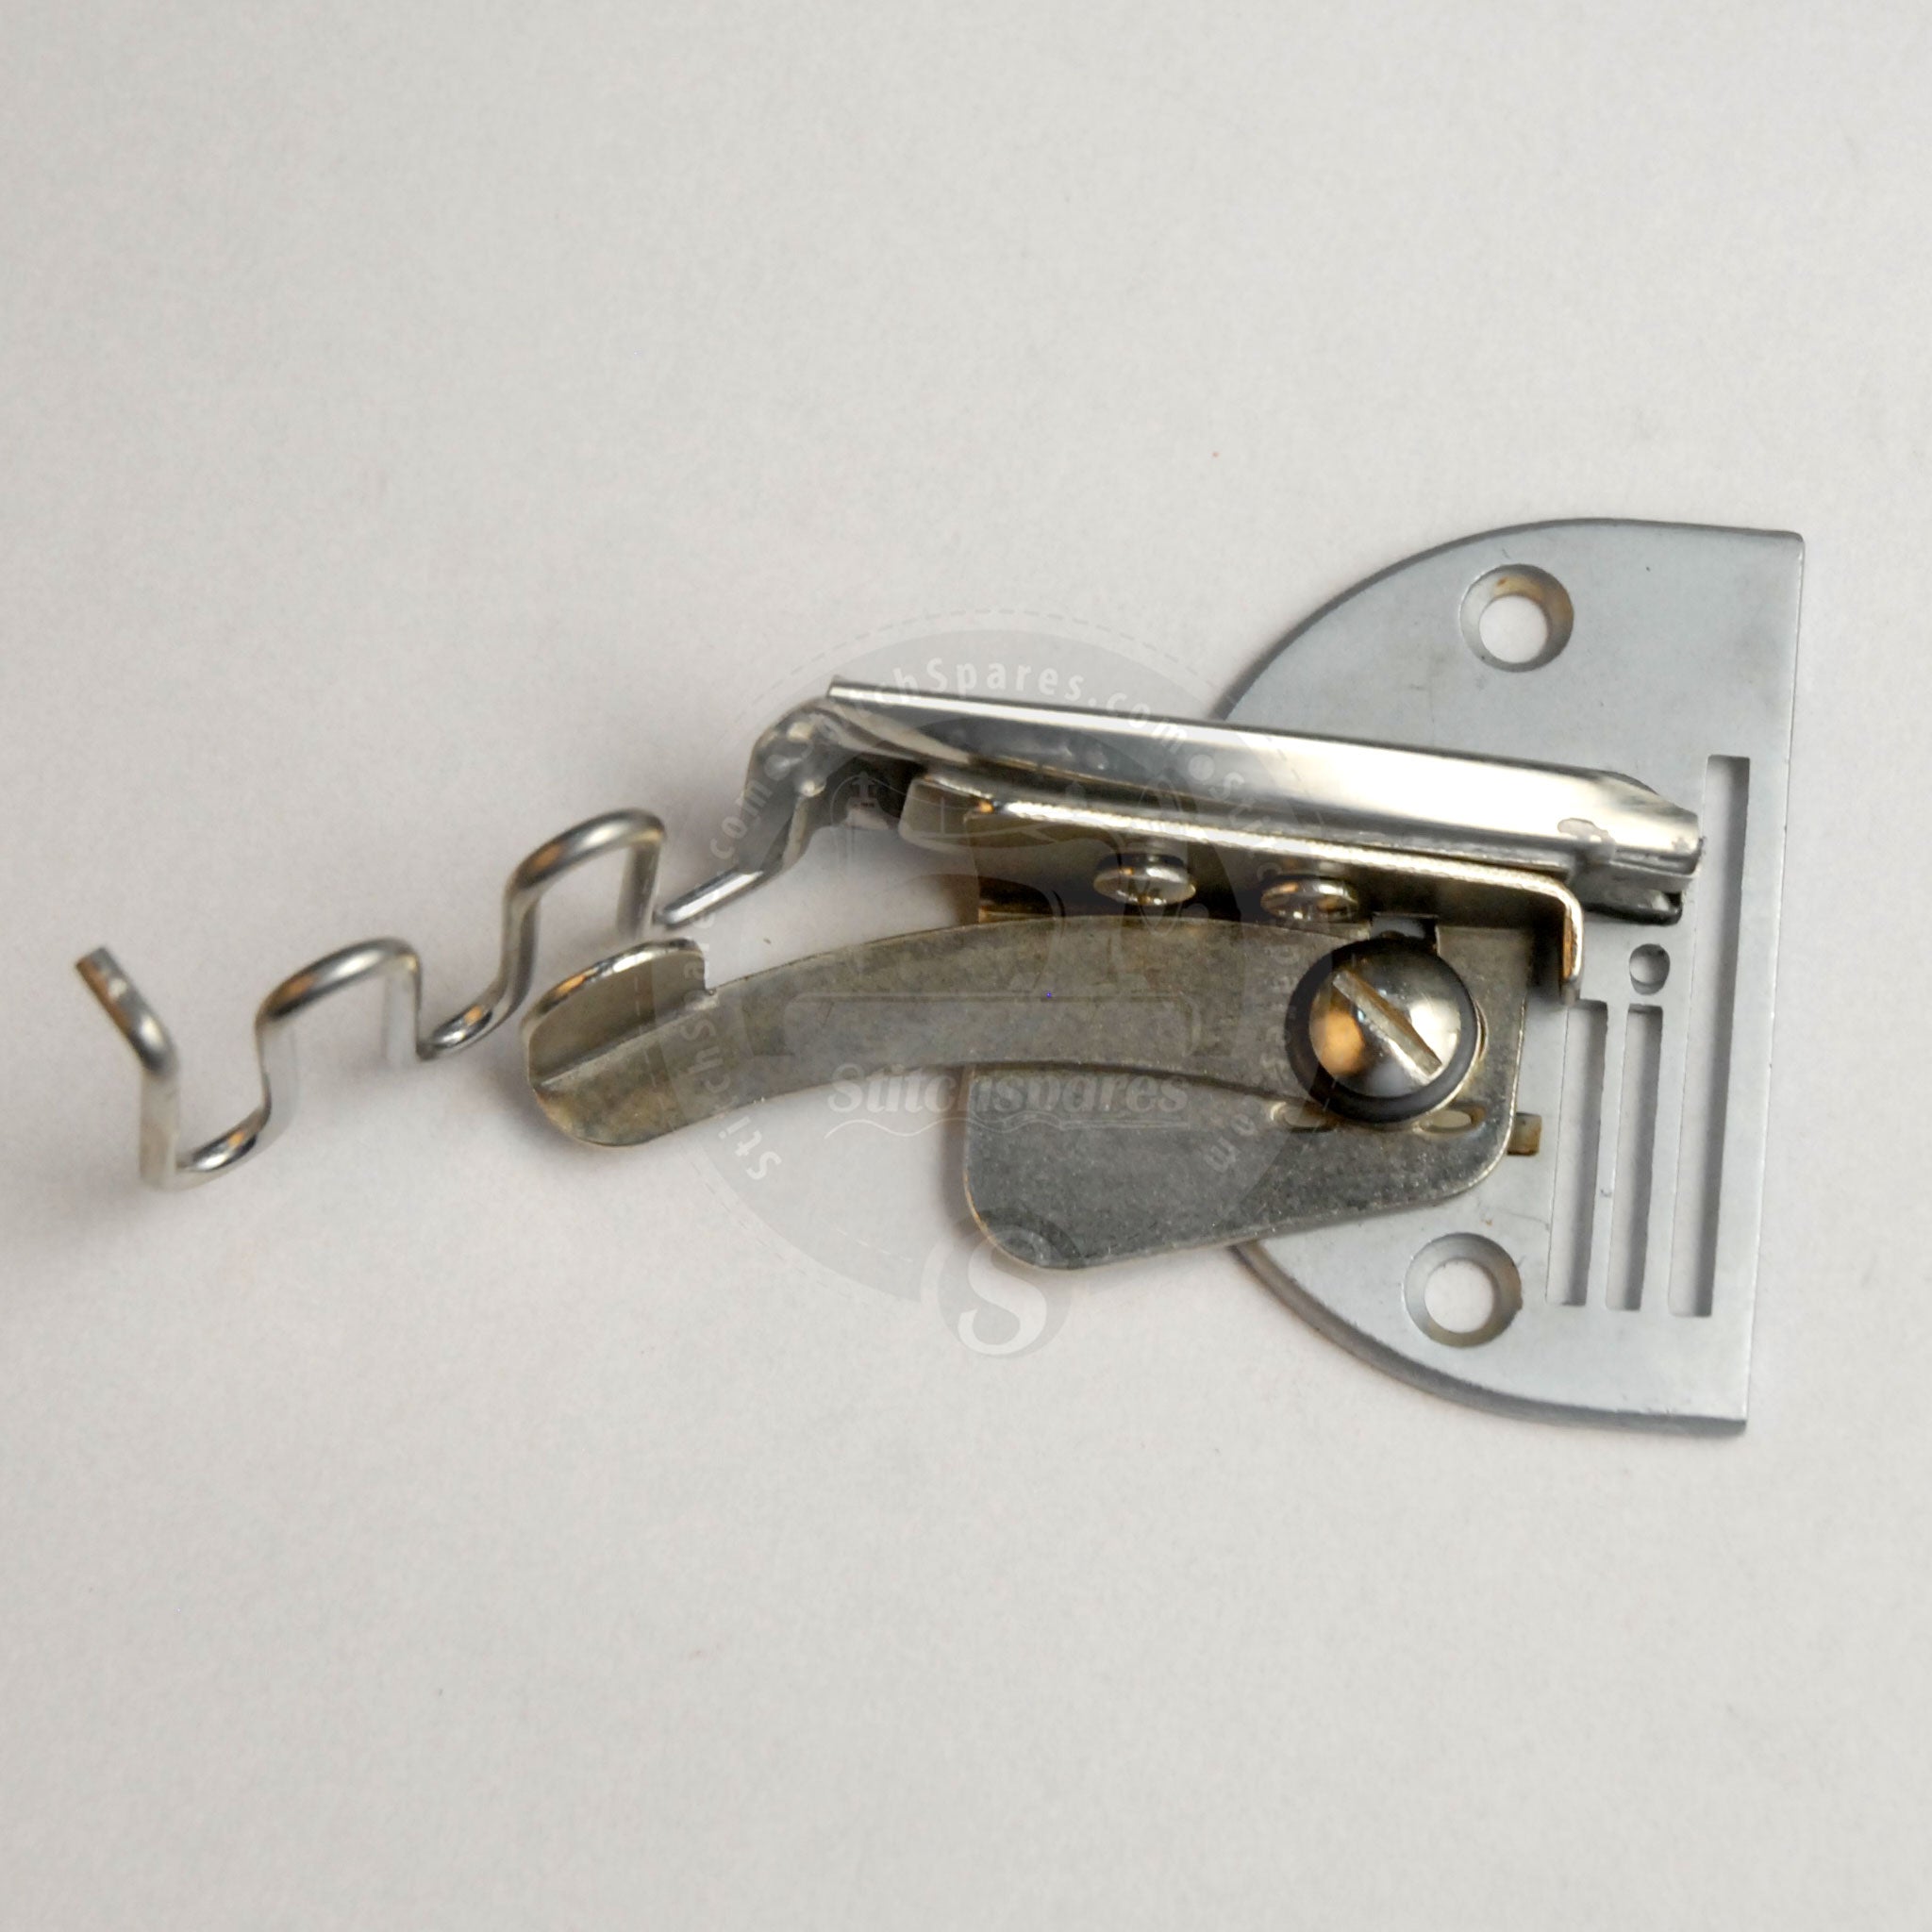 A10 Schrägbinder (Single Needle Lock Stitch Machine)